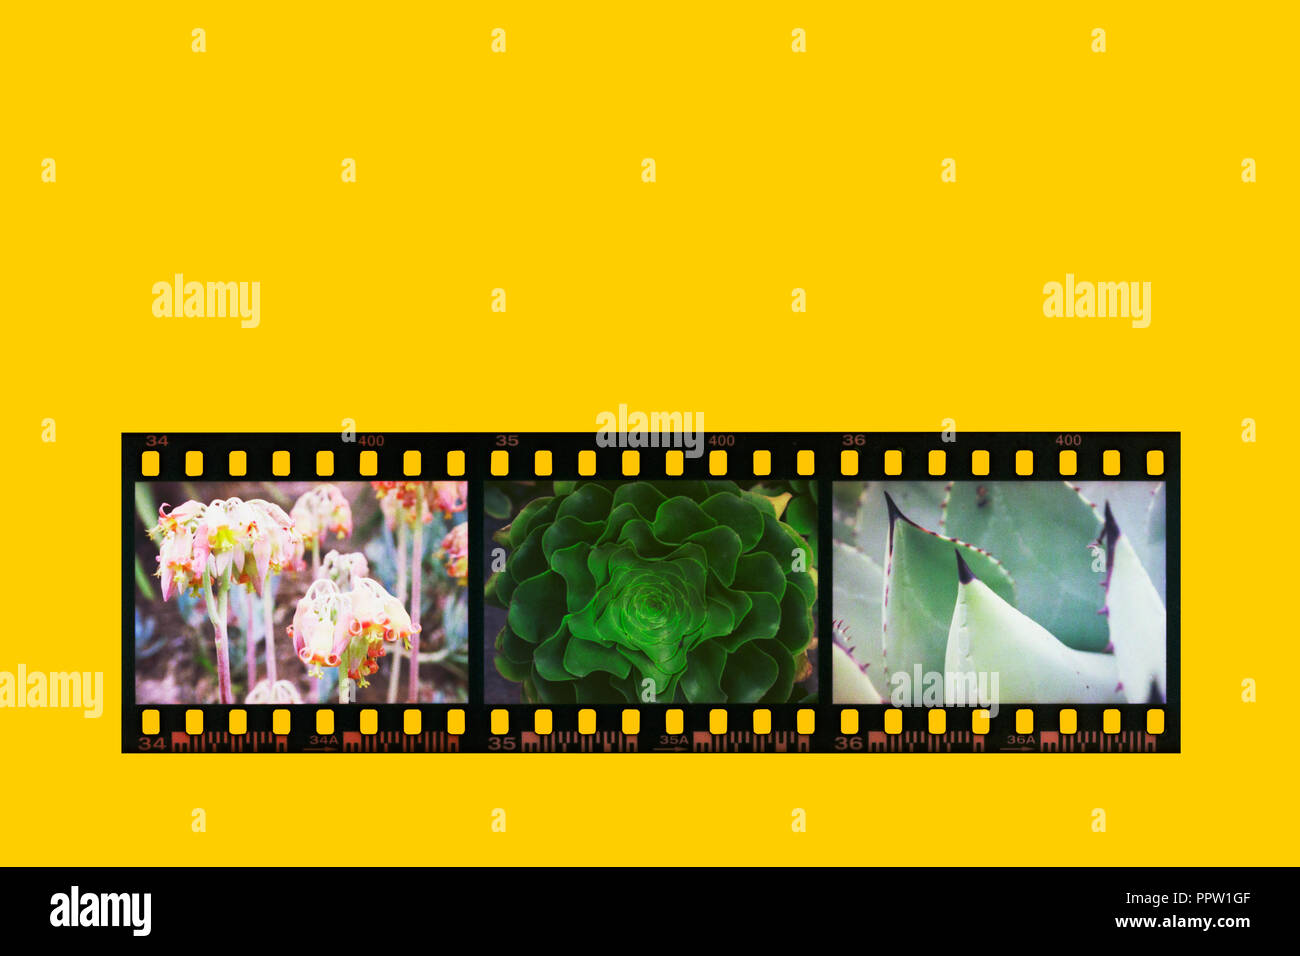 Fotografische negative Filmstreifen in positiver Farben auf einem gelben Hintergrund umgewandelt. Drei Fotos von Pflanzen von einem post produktion Wirkung erzielt. Stockfoto